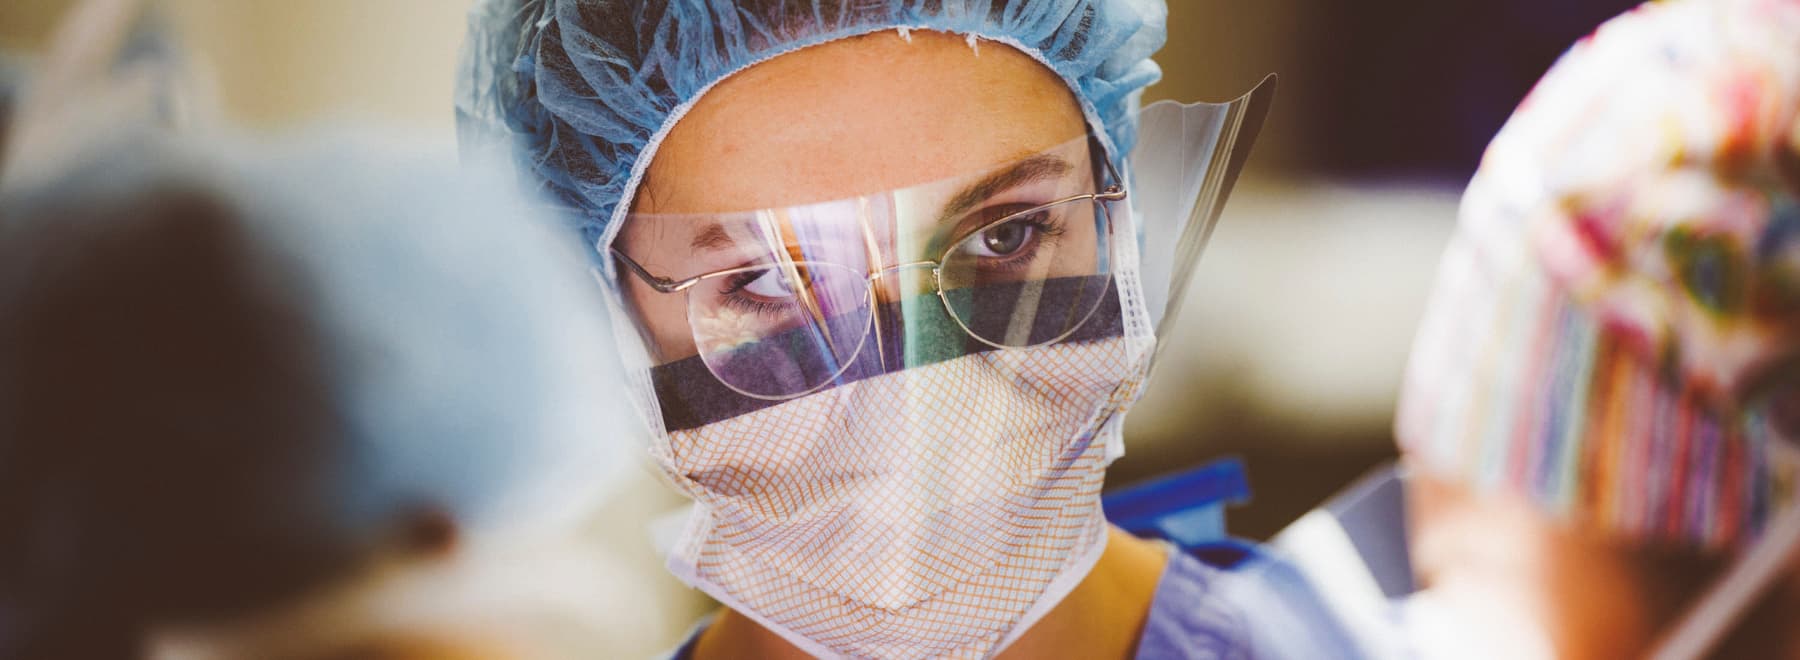 Portrait of nurse during surgery.